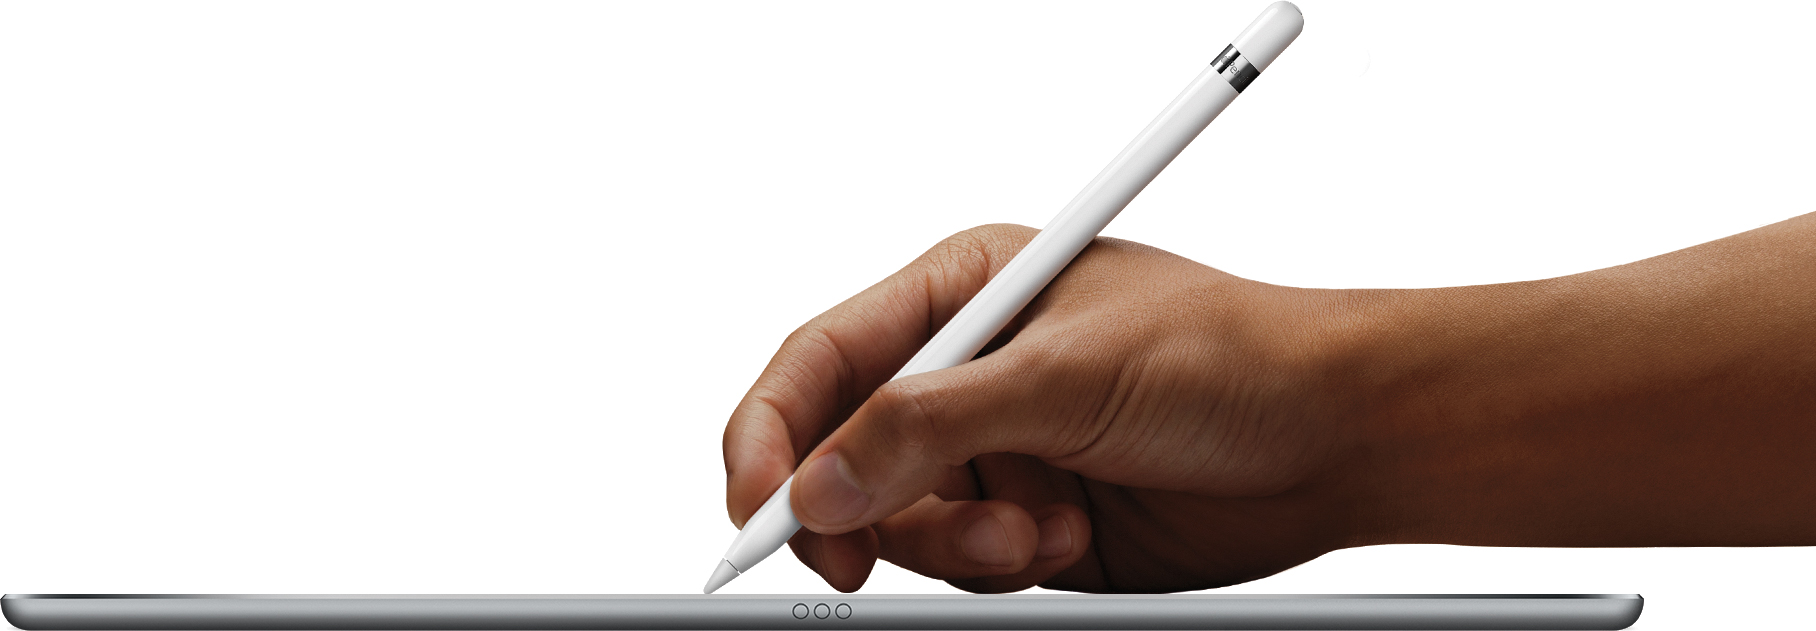 iPad Pro deitado e de lado com mão segurando o Apple Pencil